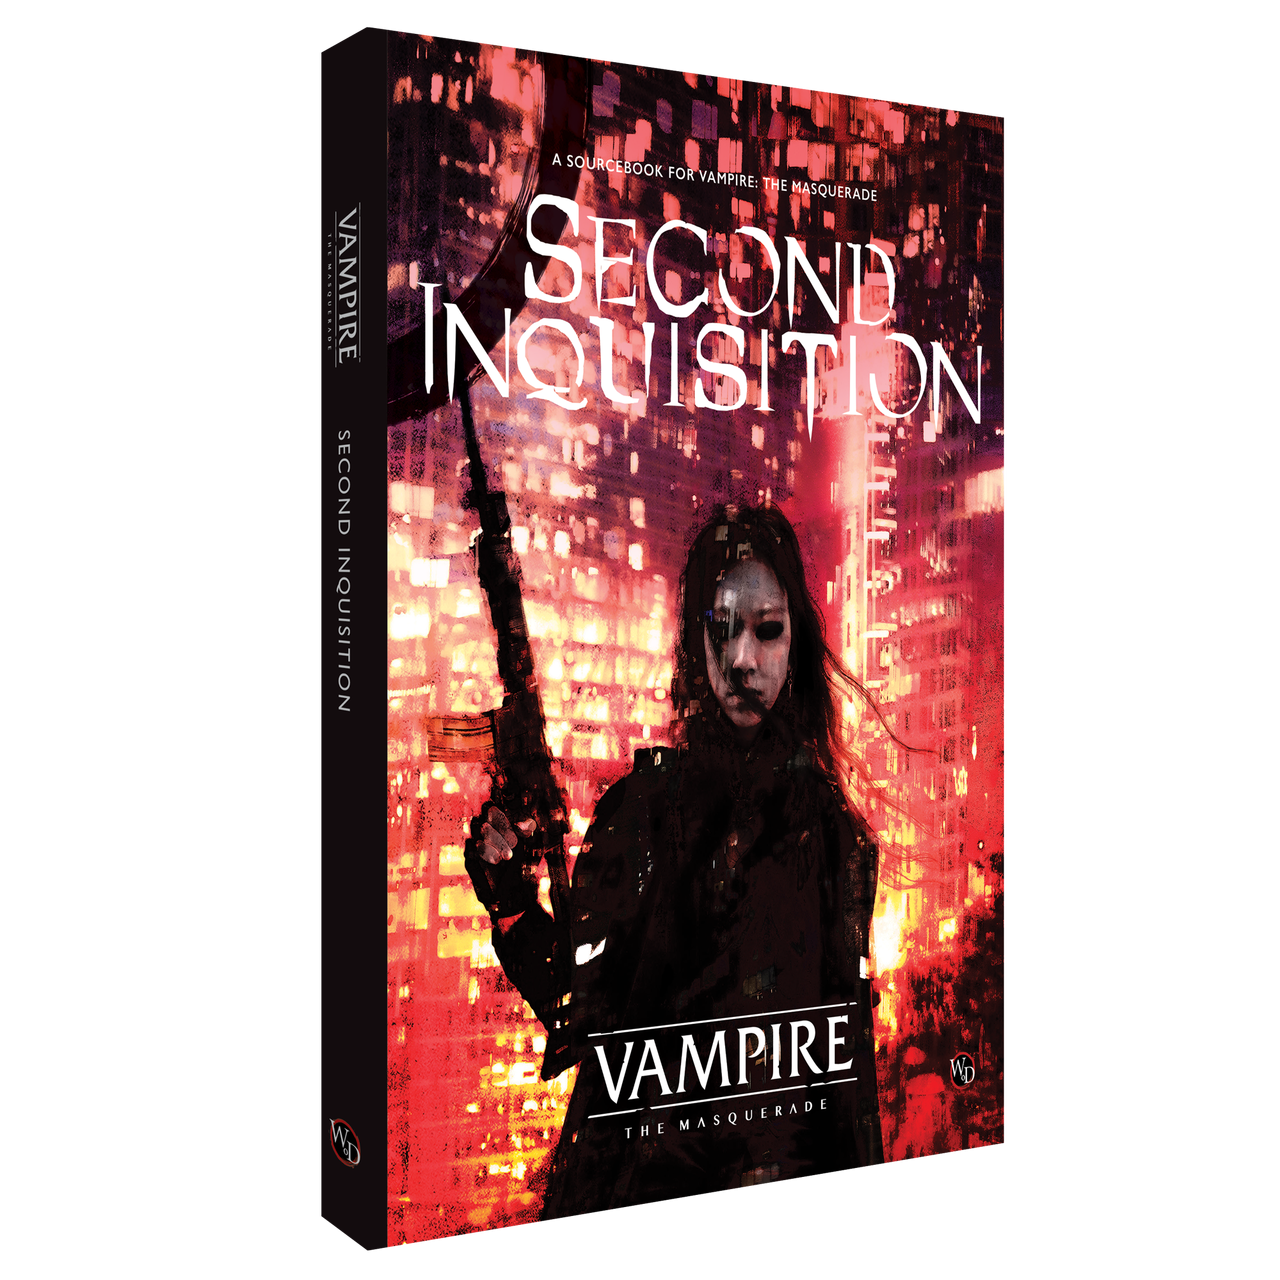 Vampire - The Masquerade 5th Edition